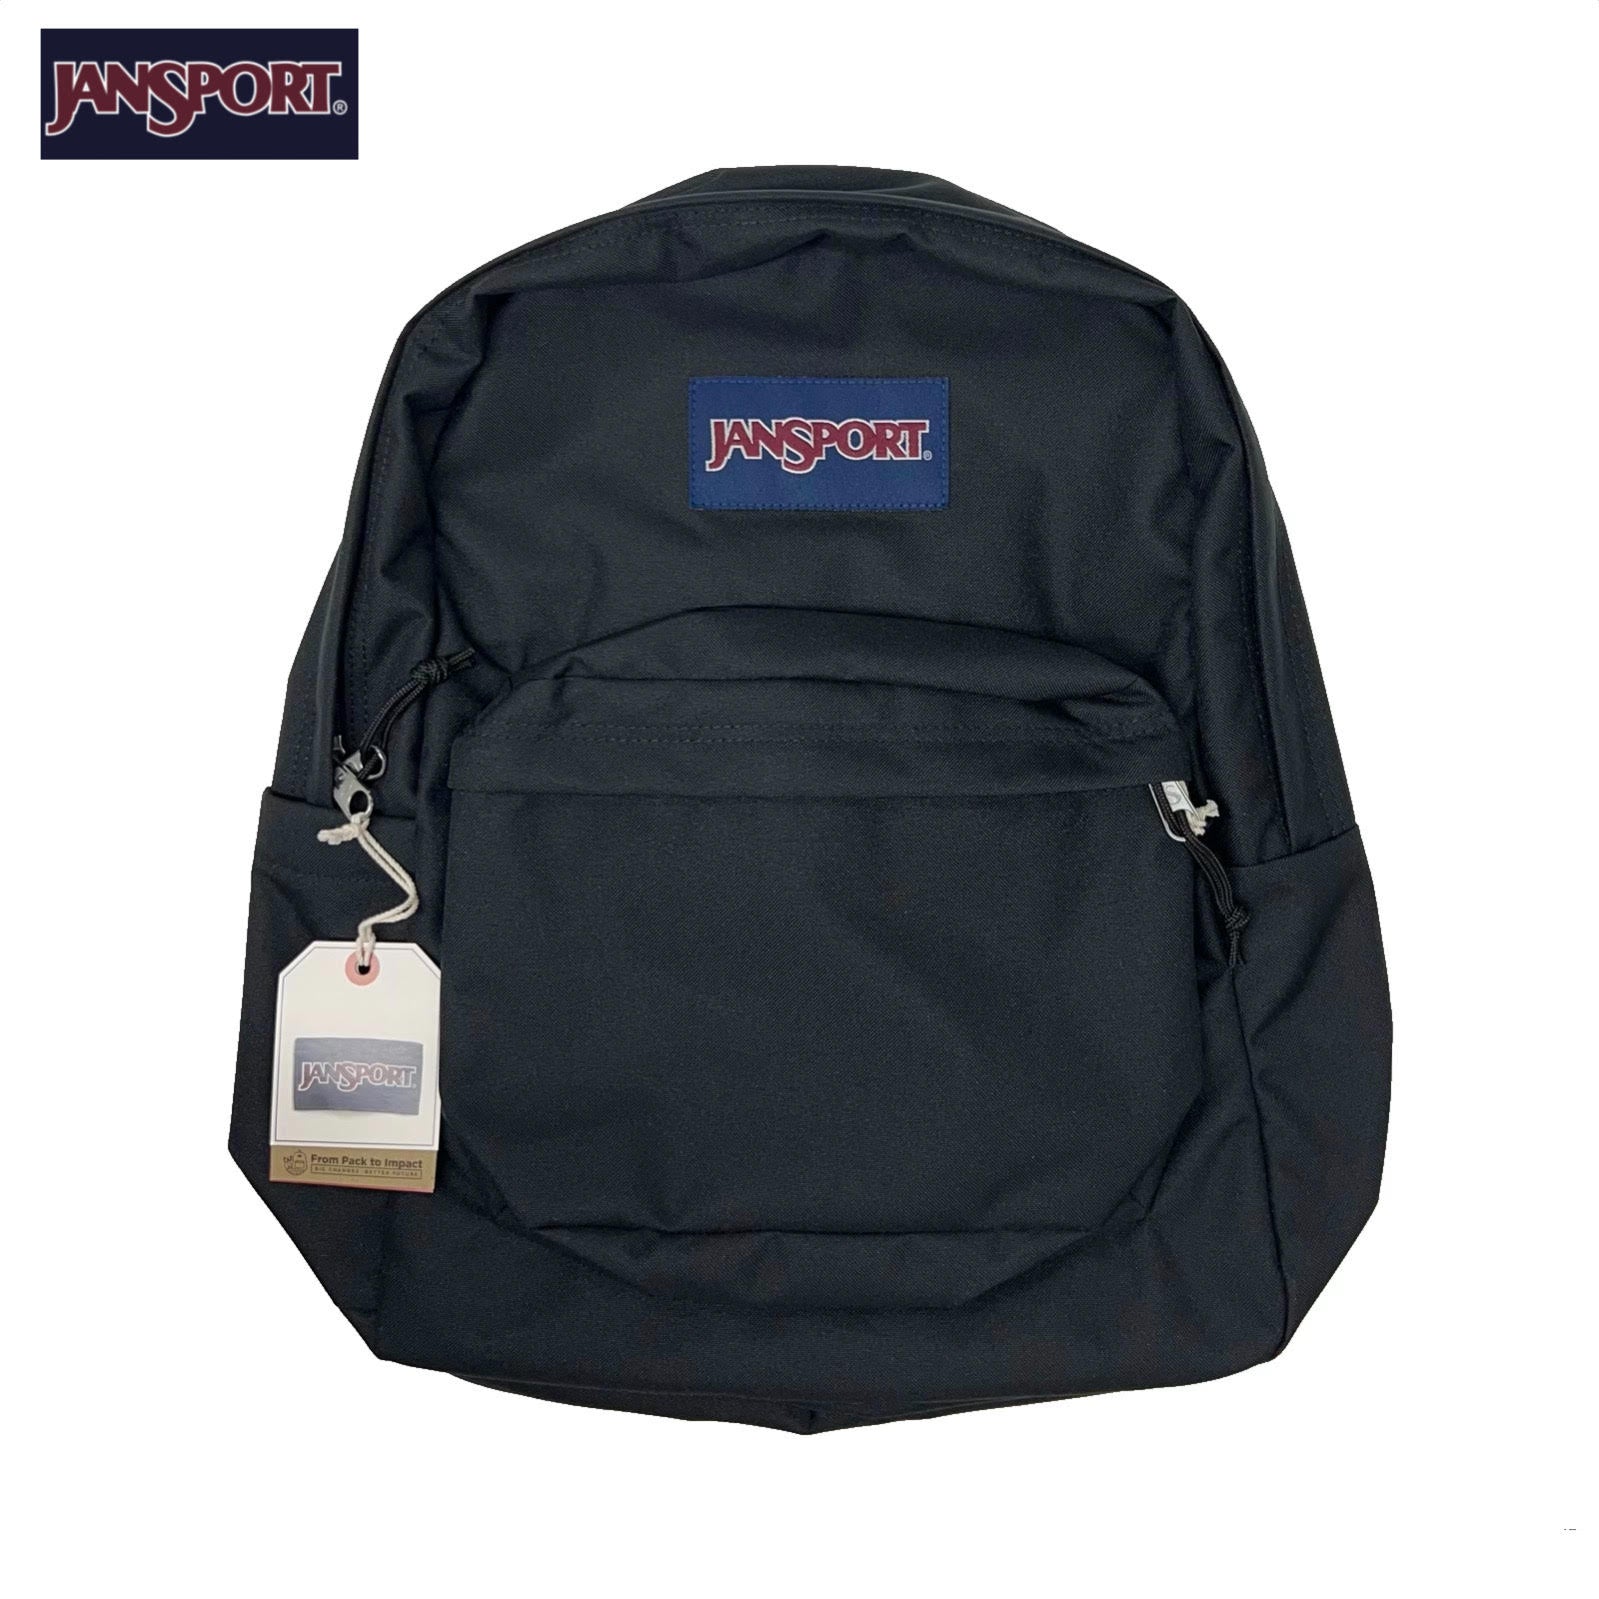 JanSport Superbreak® Plus Backpack - Black